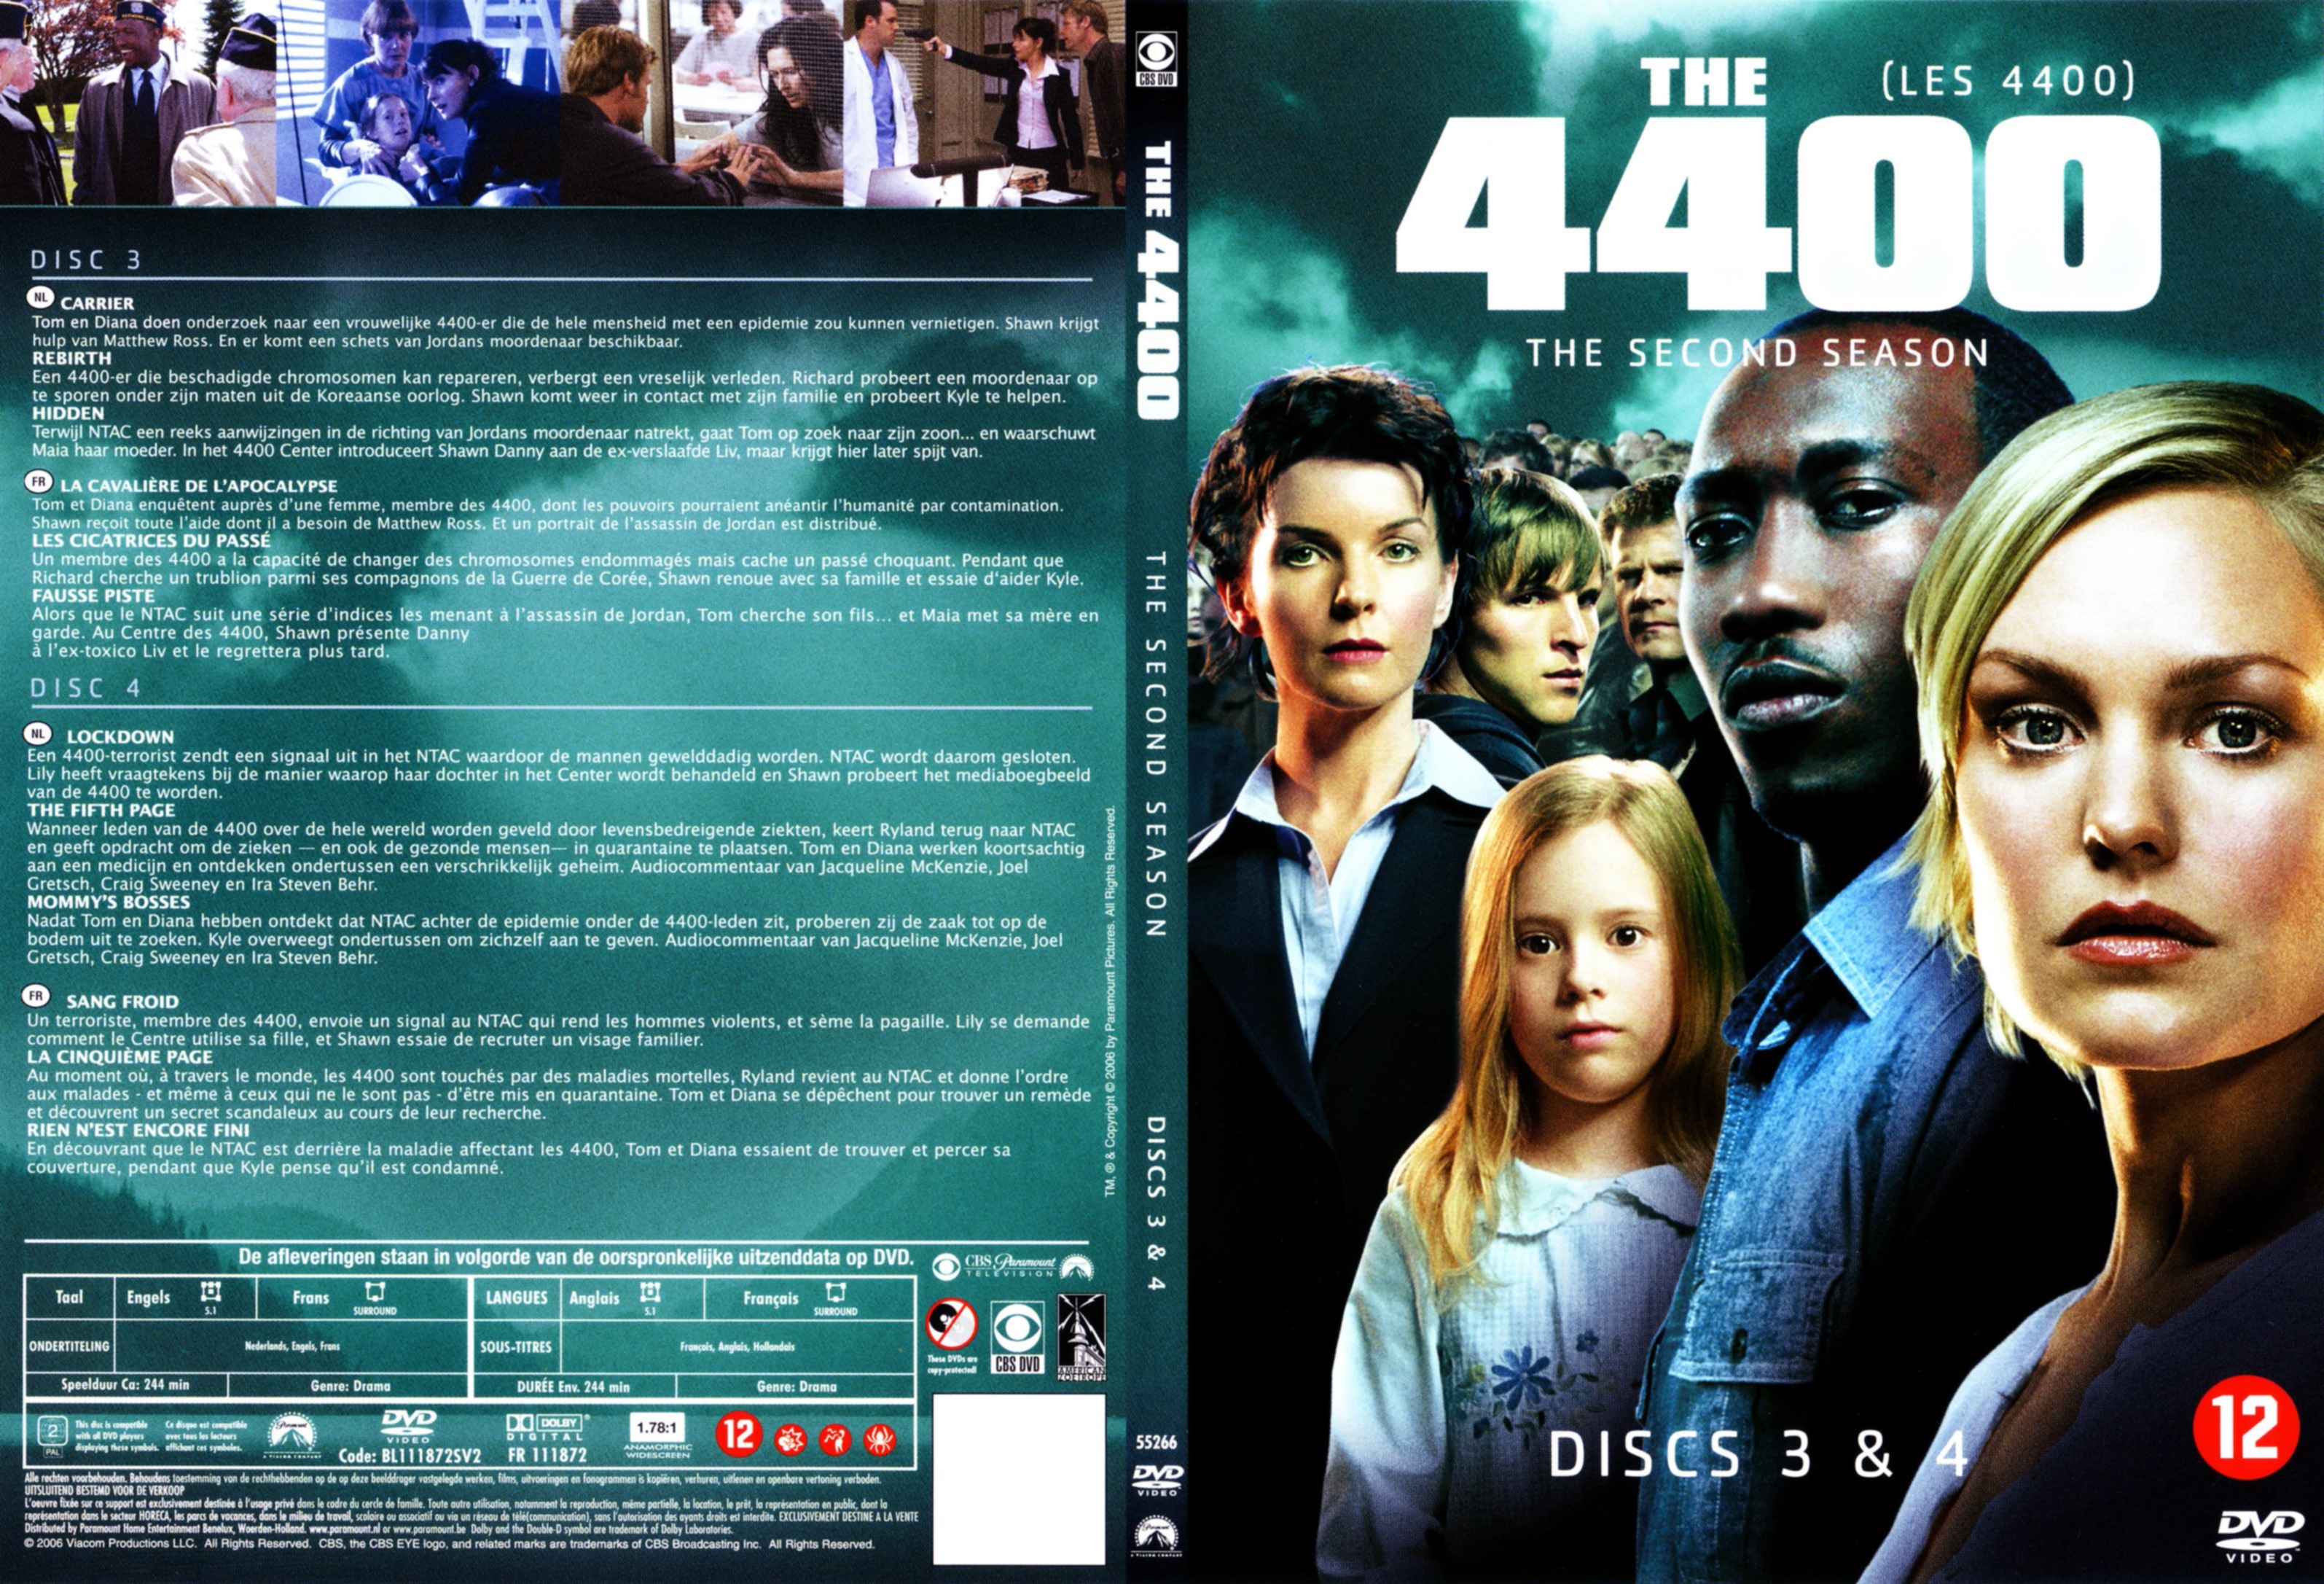 Jaquette DVD Les 4400 Saison 2 DVD 2